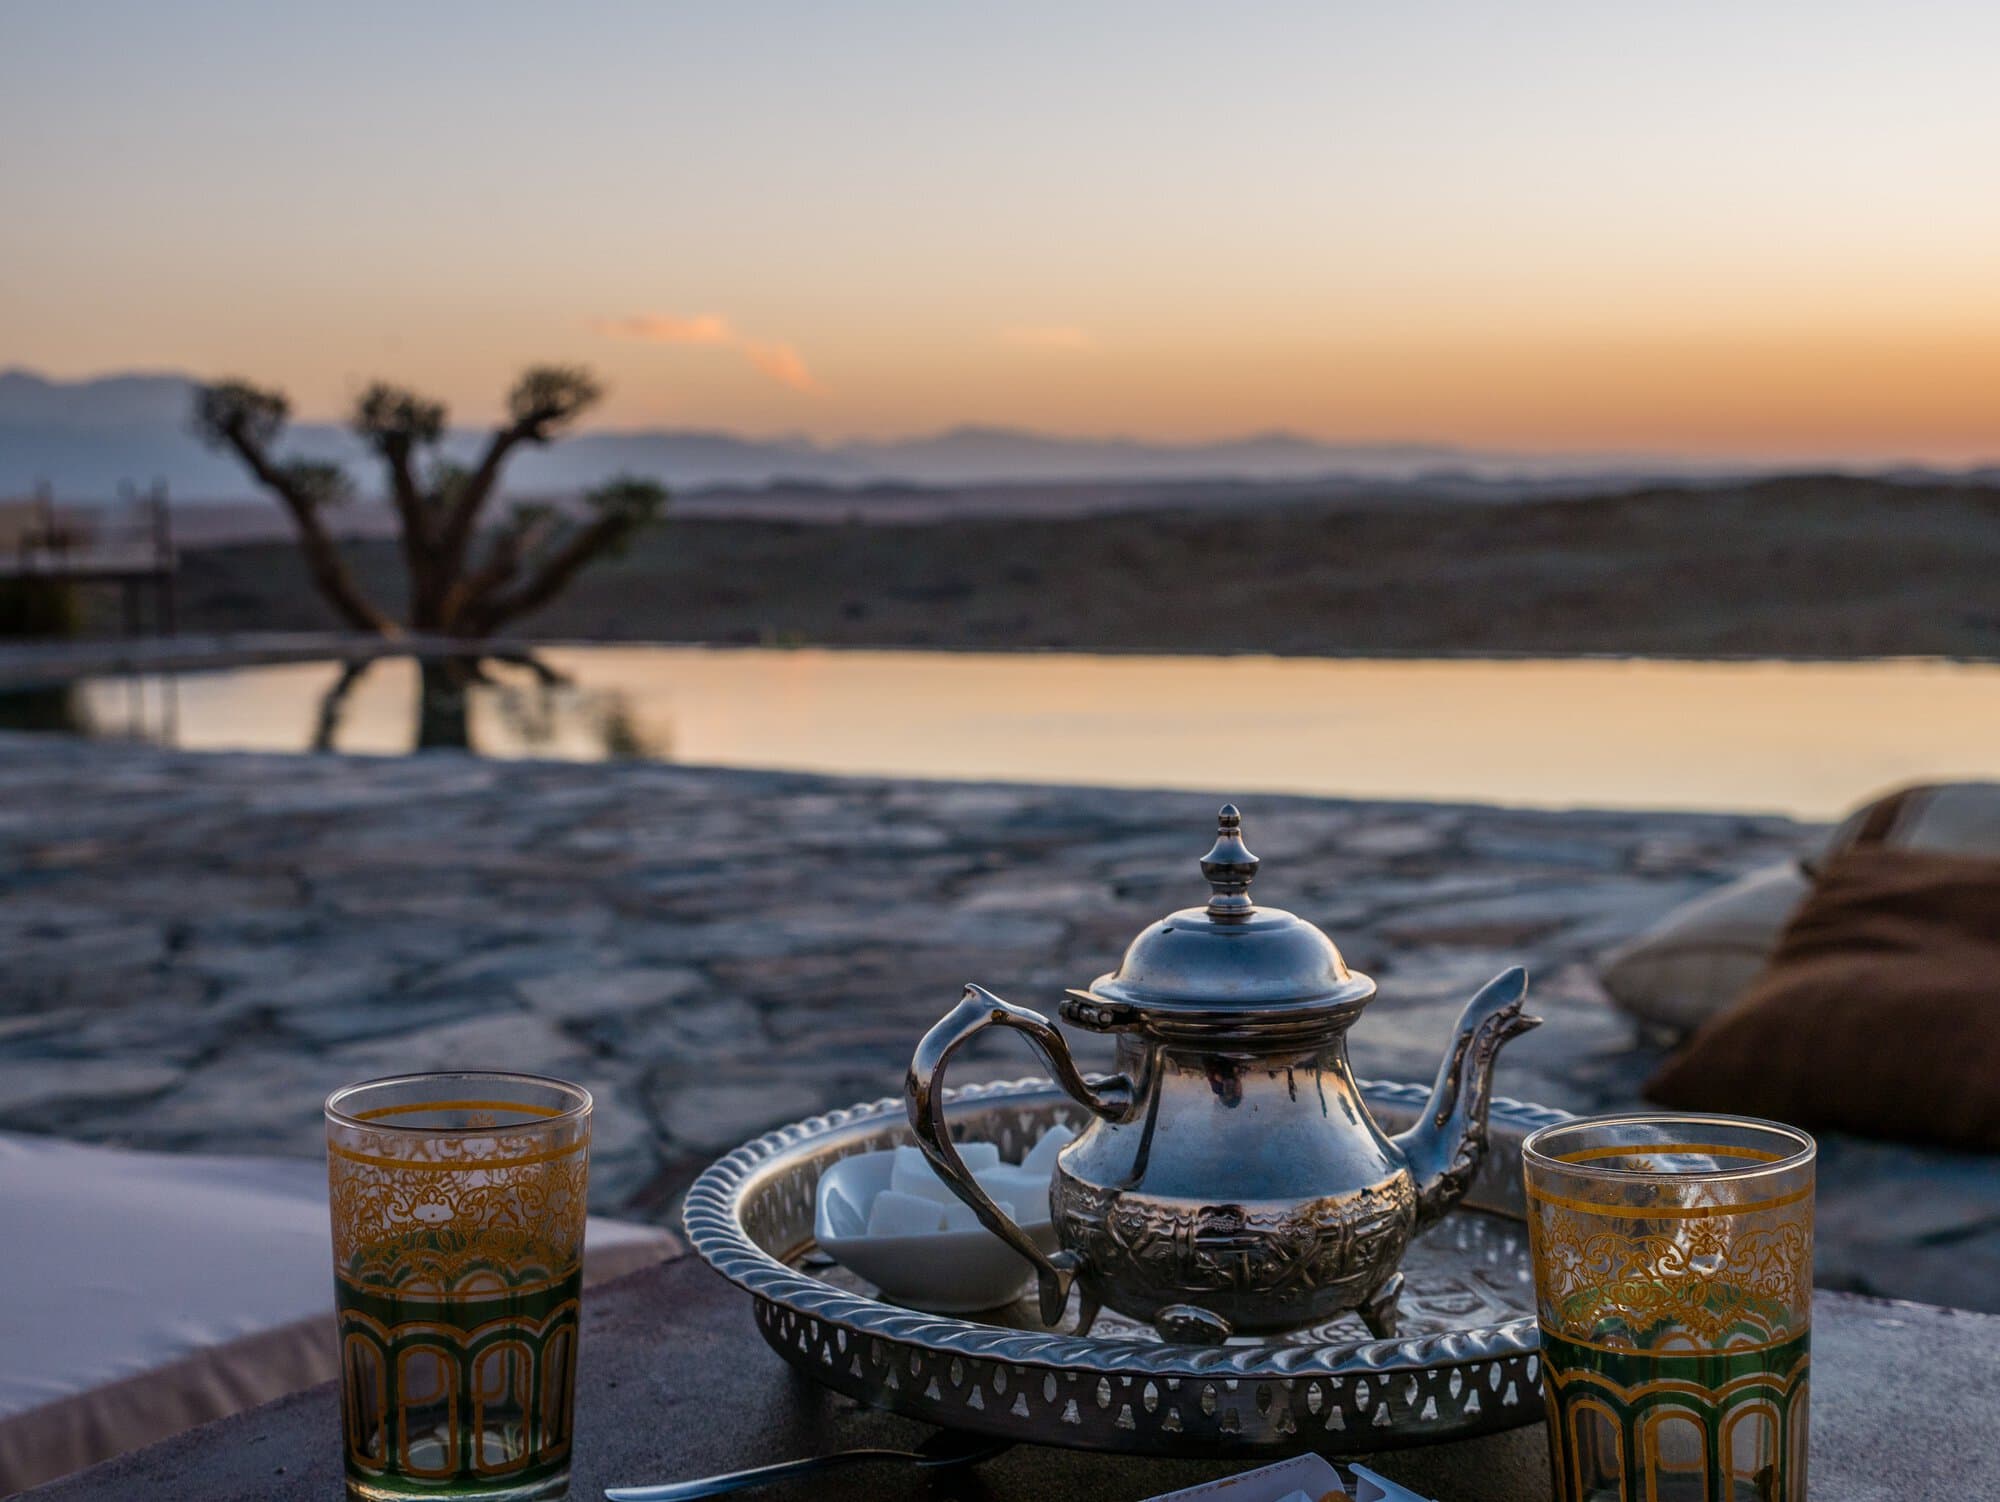 תה נענע מרוקאי מסורתי לעת שקיעה במאהל במדבר אגאפי, מרוקו